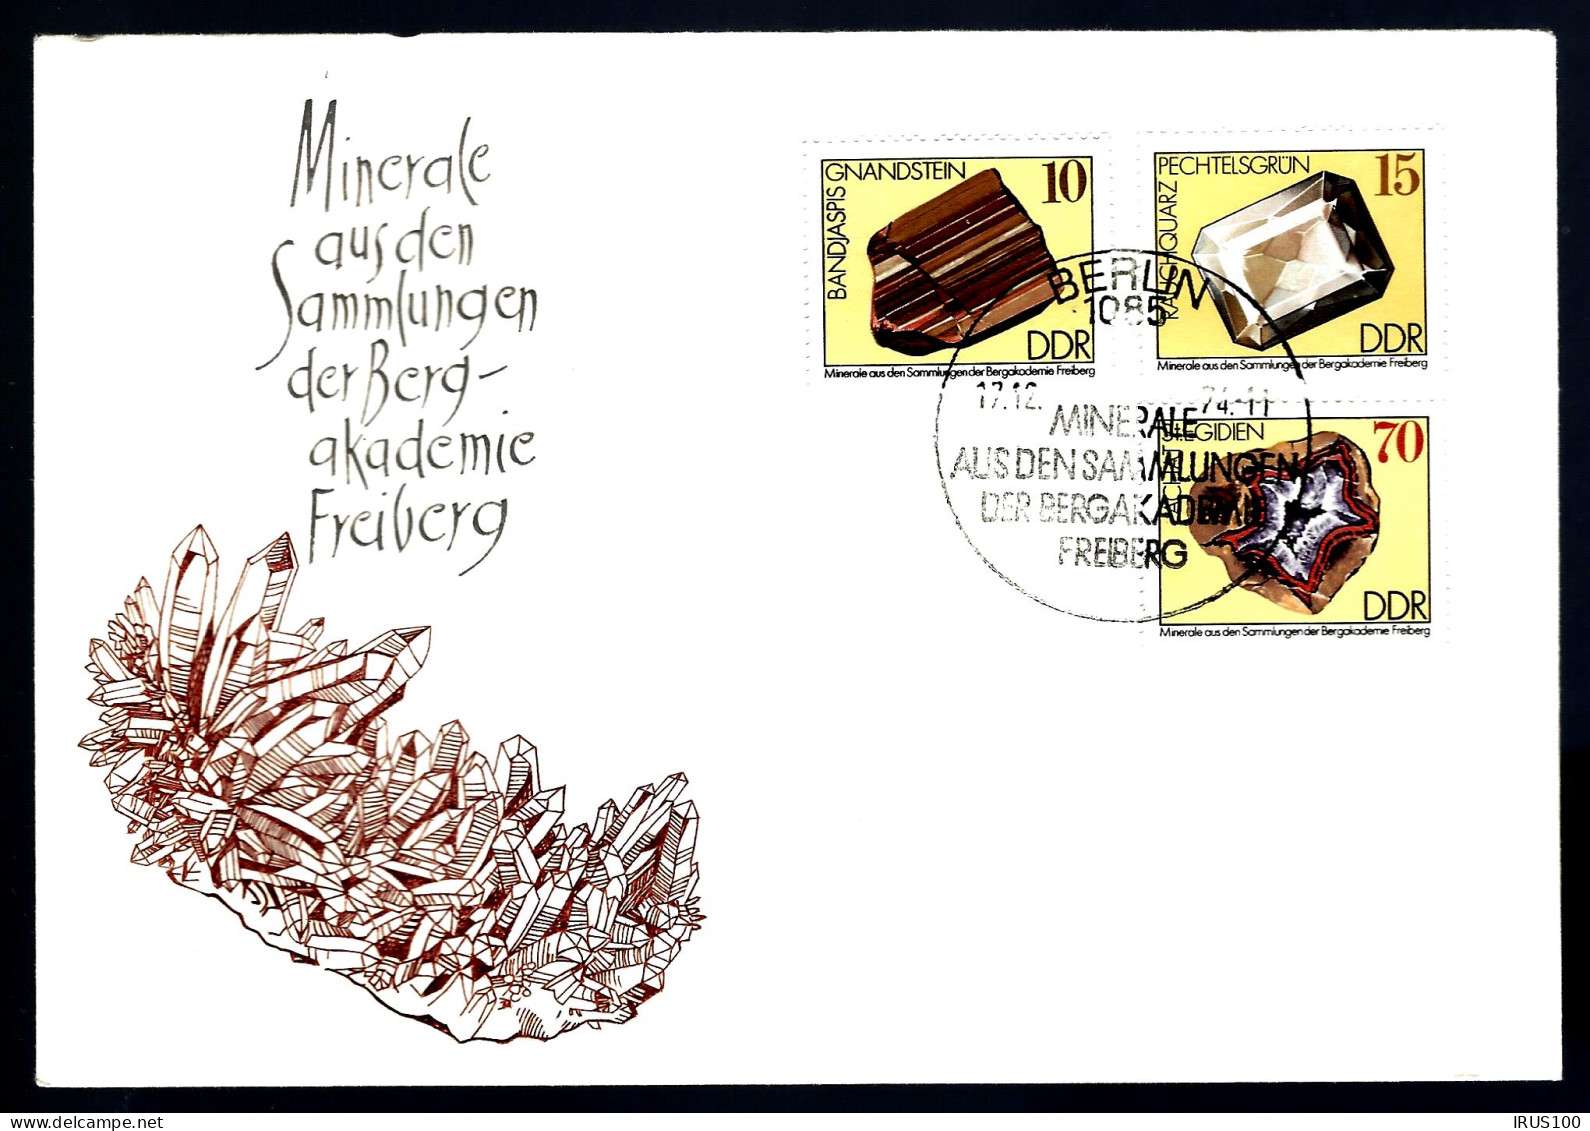 MINÉRAUX - COLLECTION DE LA BERG-AKADEMIE - FRIBOURG - 2 ENVELOPPES - Mineralen